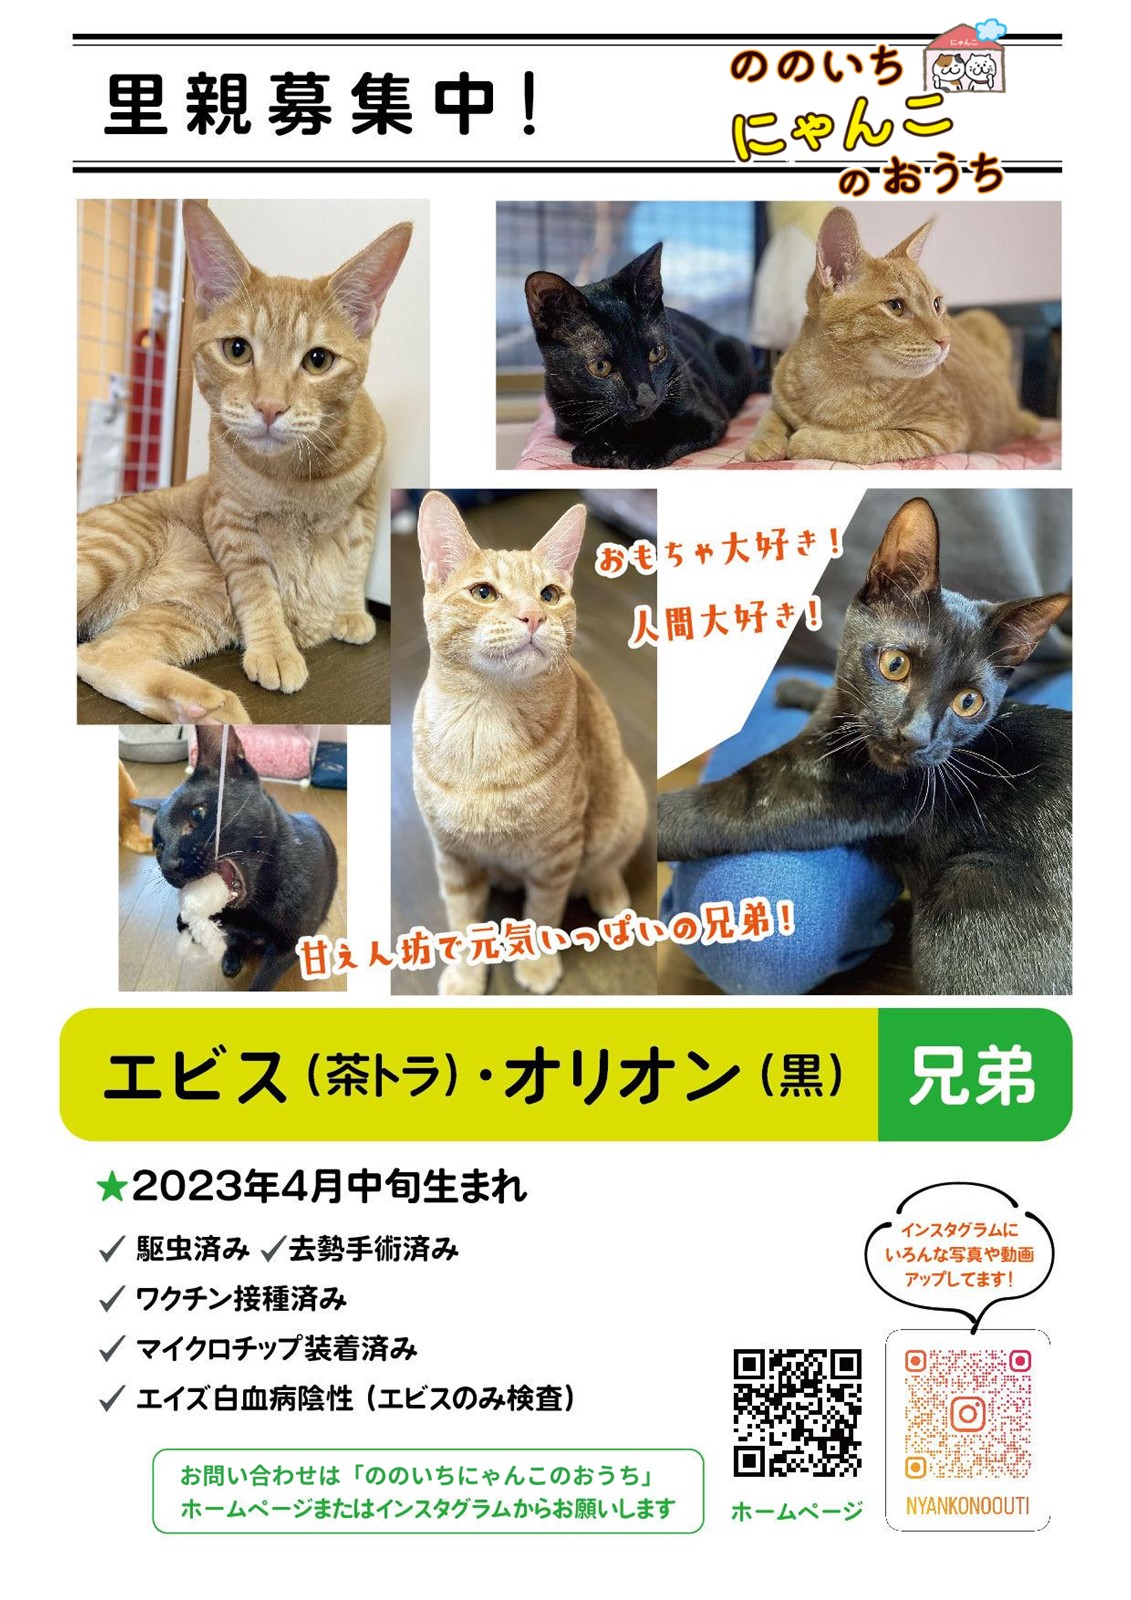 ののいちにゃんこのおうち様より　里親募集中の保護猫「エビスくん」「オリオンくん」のご紹介　石川県野々市市